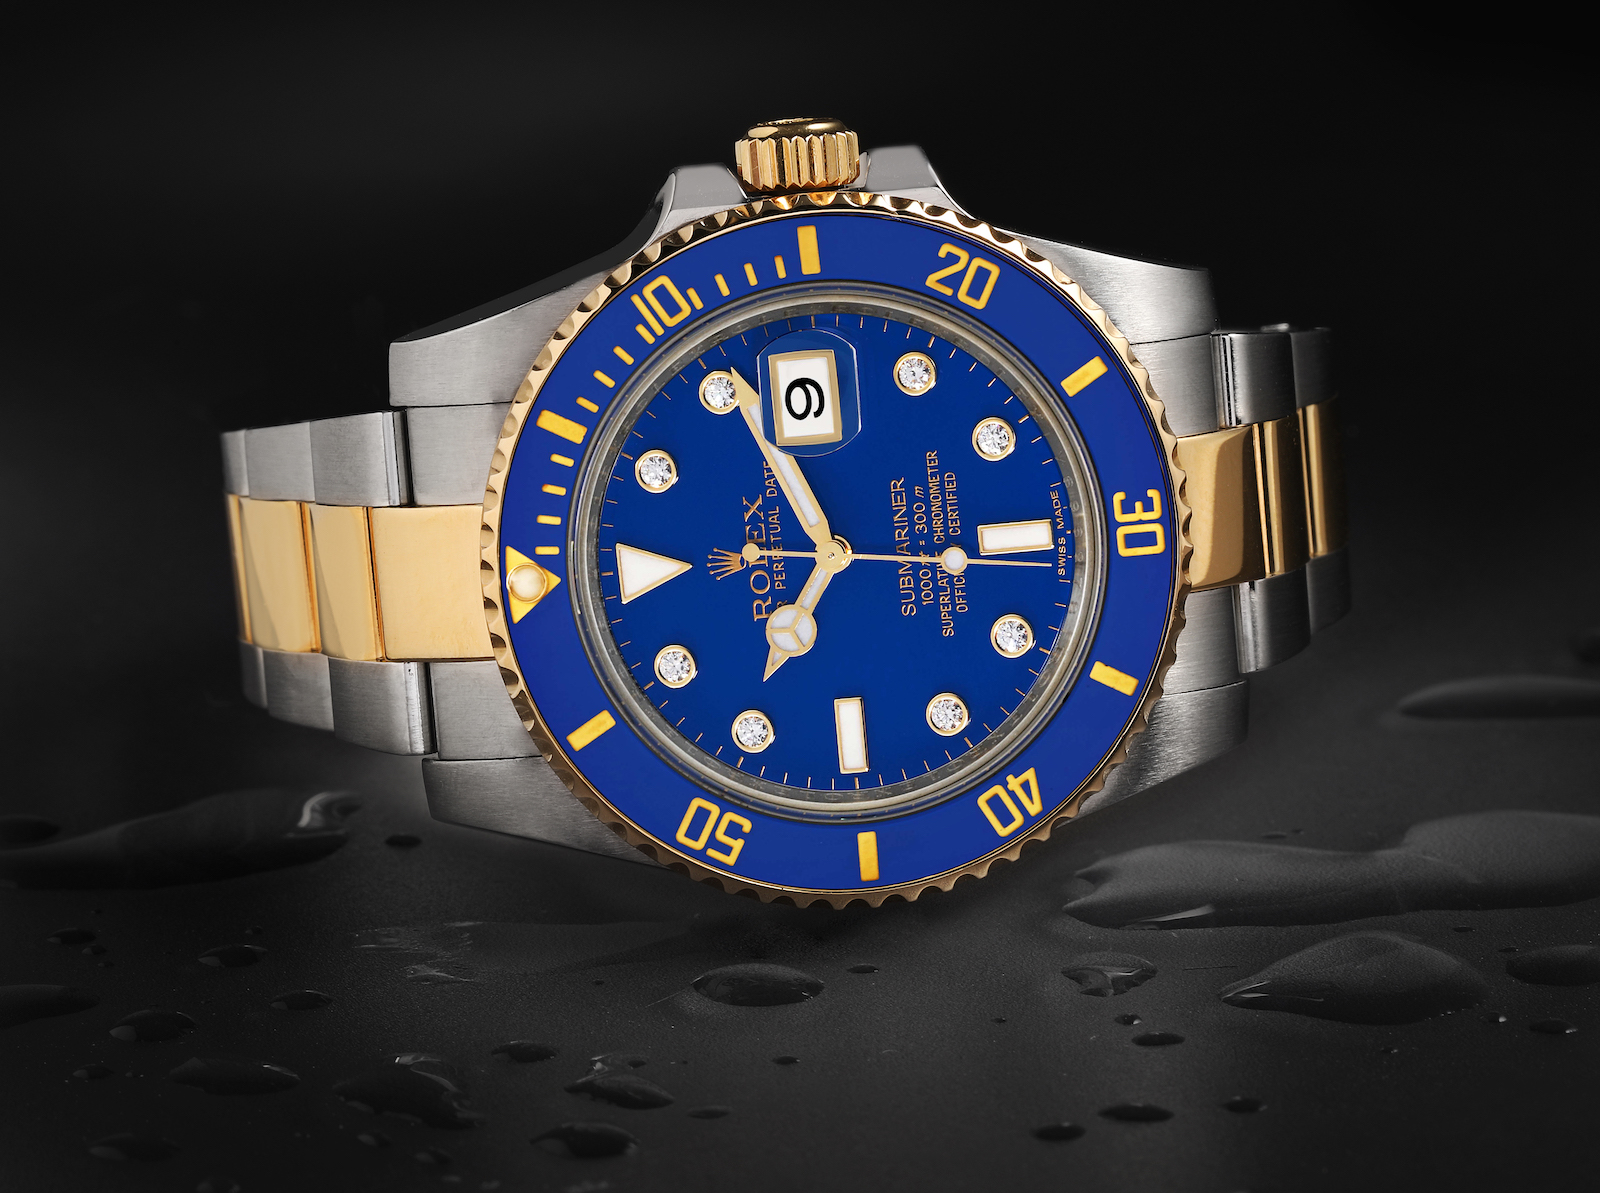 Rolex Watches: Waterproof vs Water Resistant